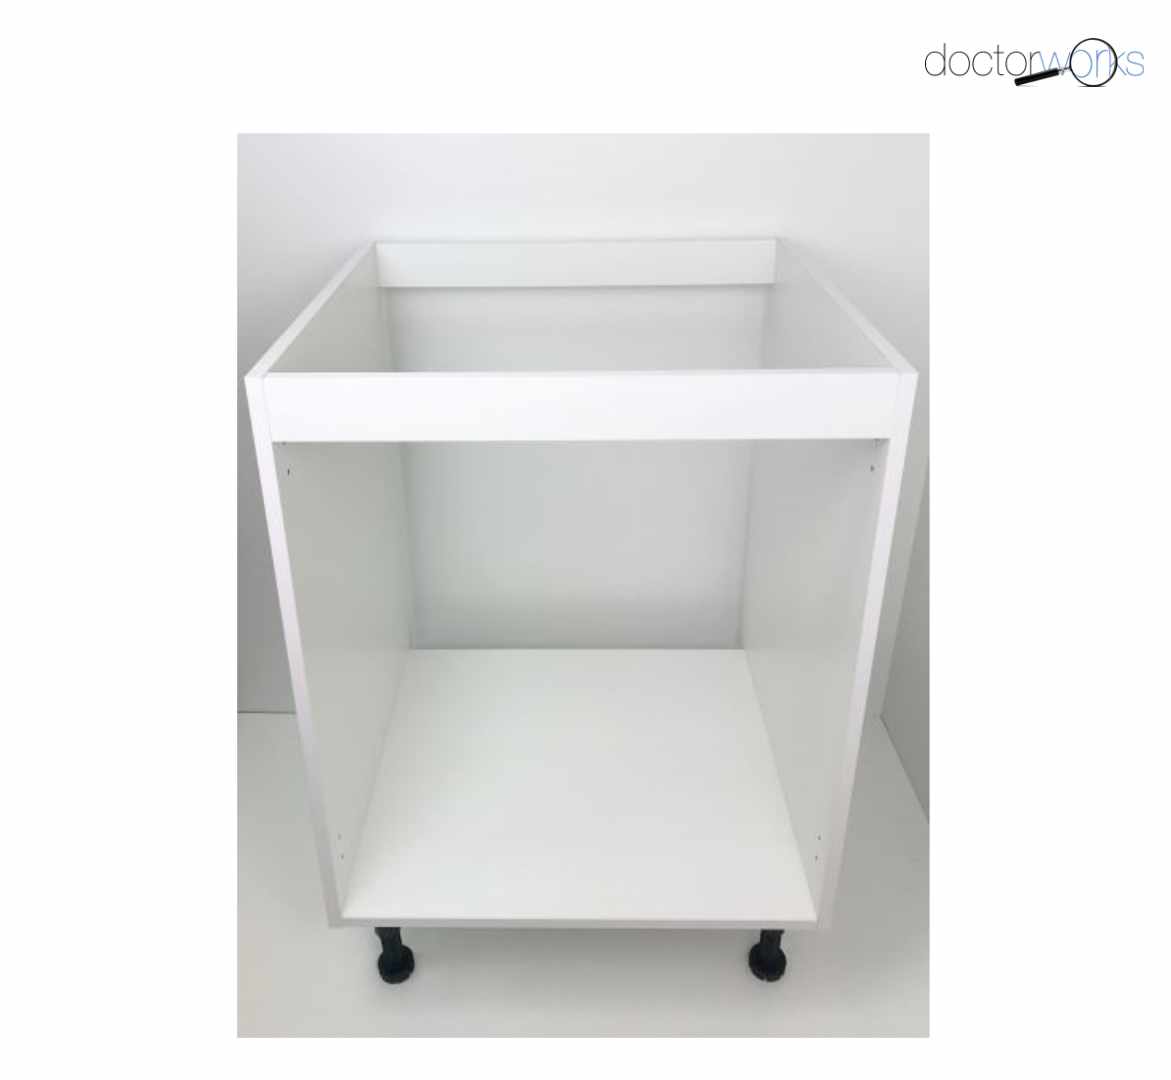 Casco para mueble bajo fregadero para cocina de color blanco de 60 cm